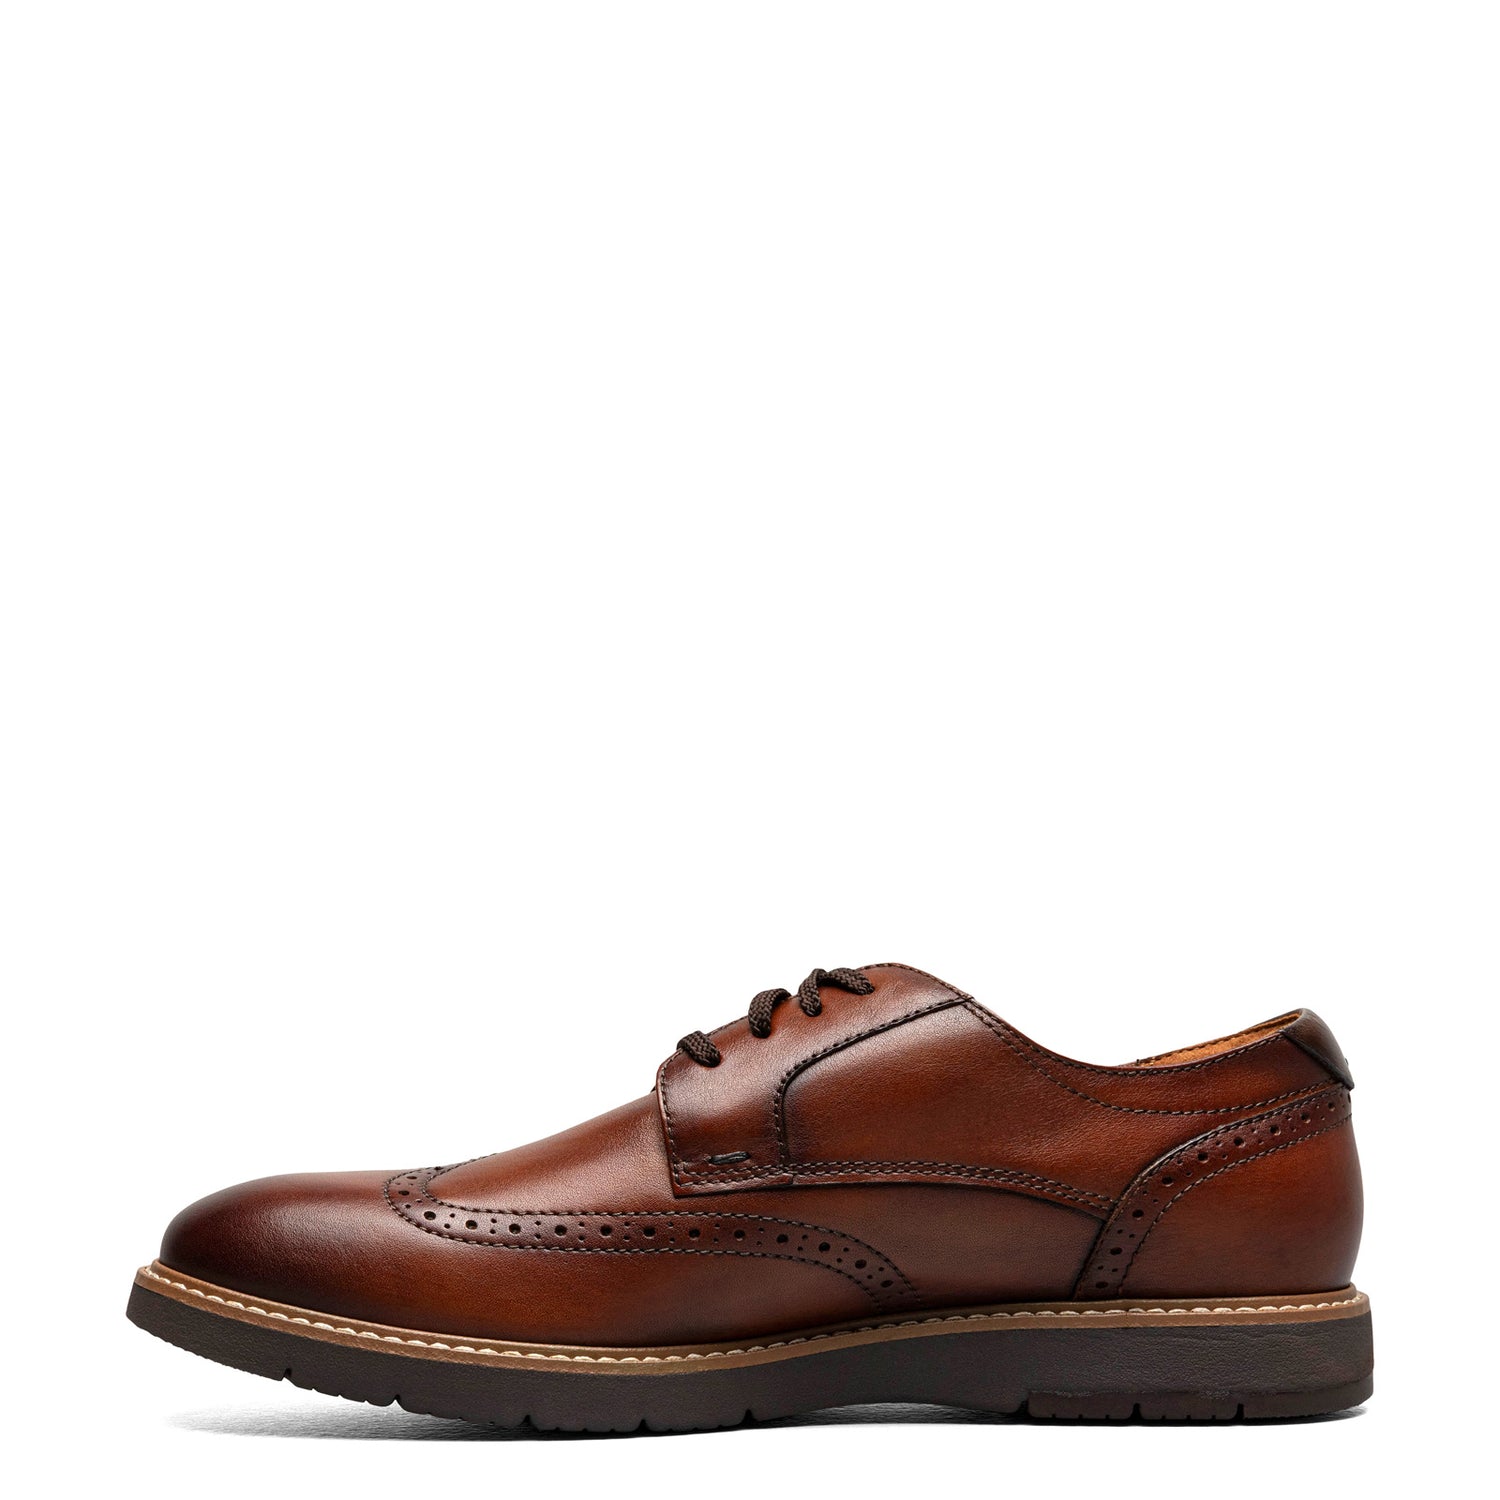 Peltz Shoes  Men's Florsheim Vibe Wingtip Oxford COGNAC Brown 14417-221